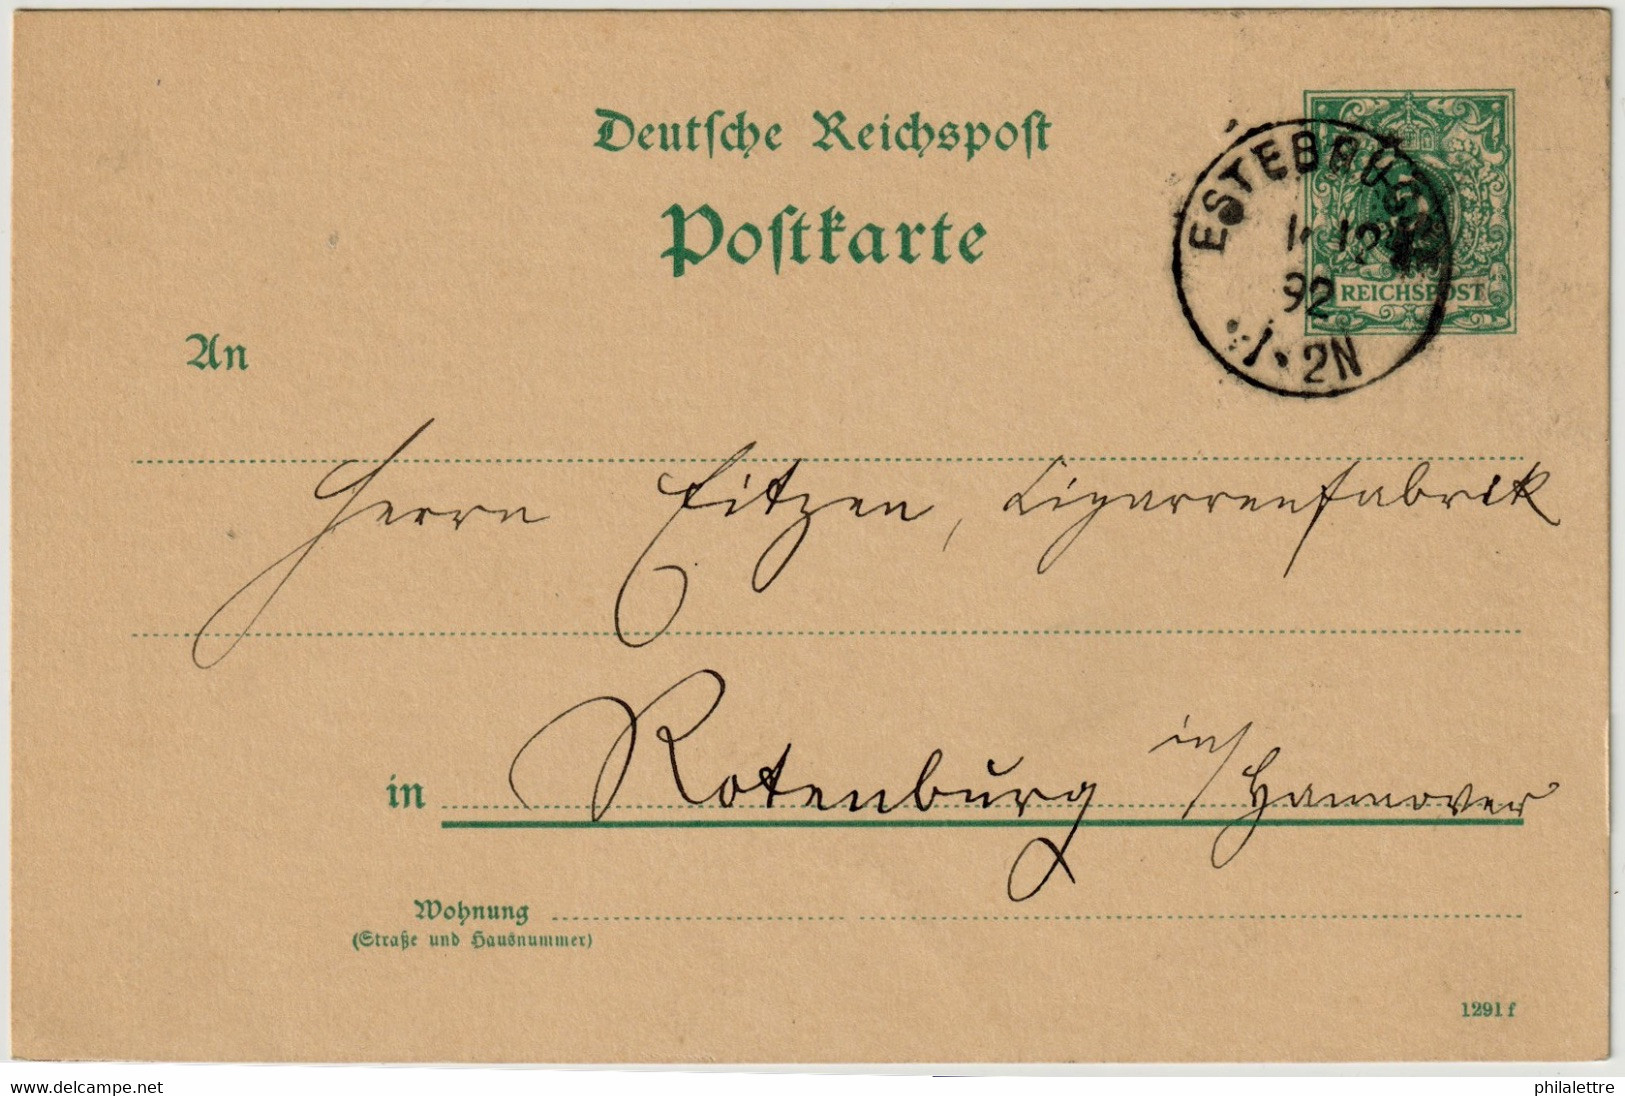 ALLEMAGNE / DEUTSCHLAND - 1892 Einkreisstempel "ESTEBRÜGGE" Auf 5p GS Postkarte - Storia Postale